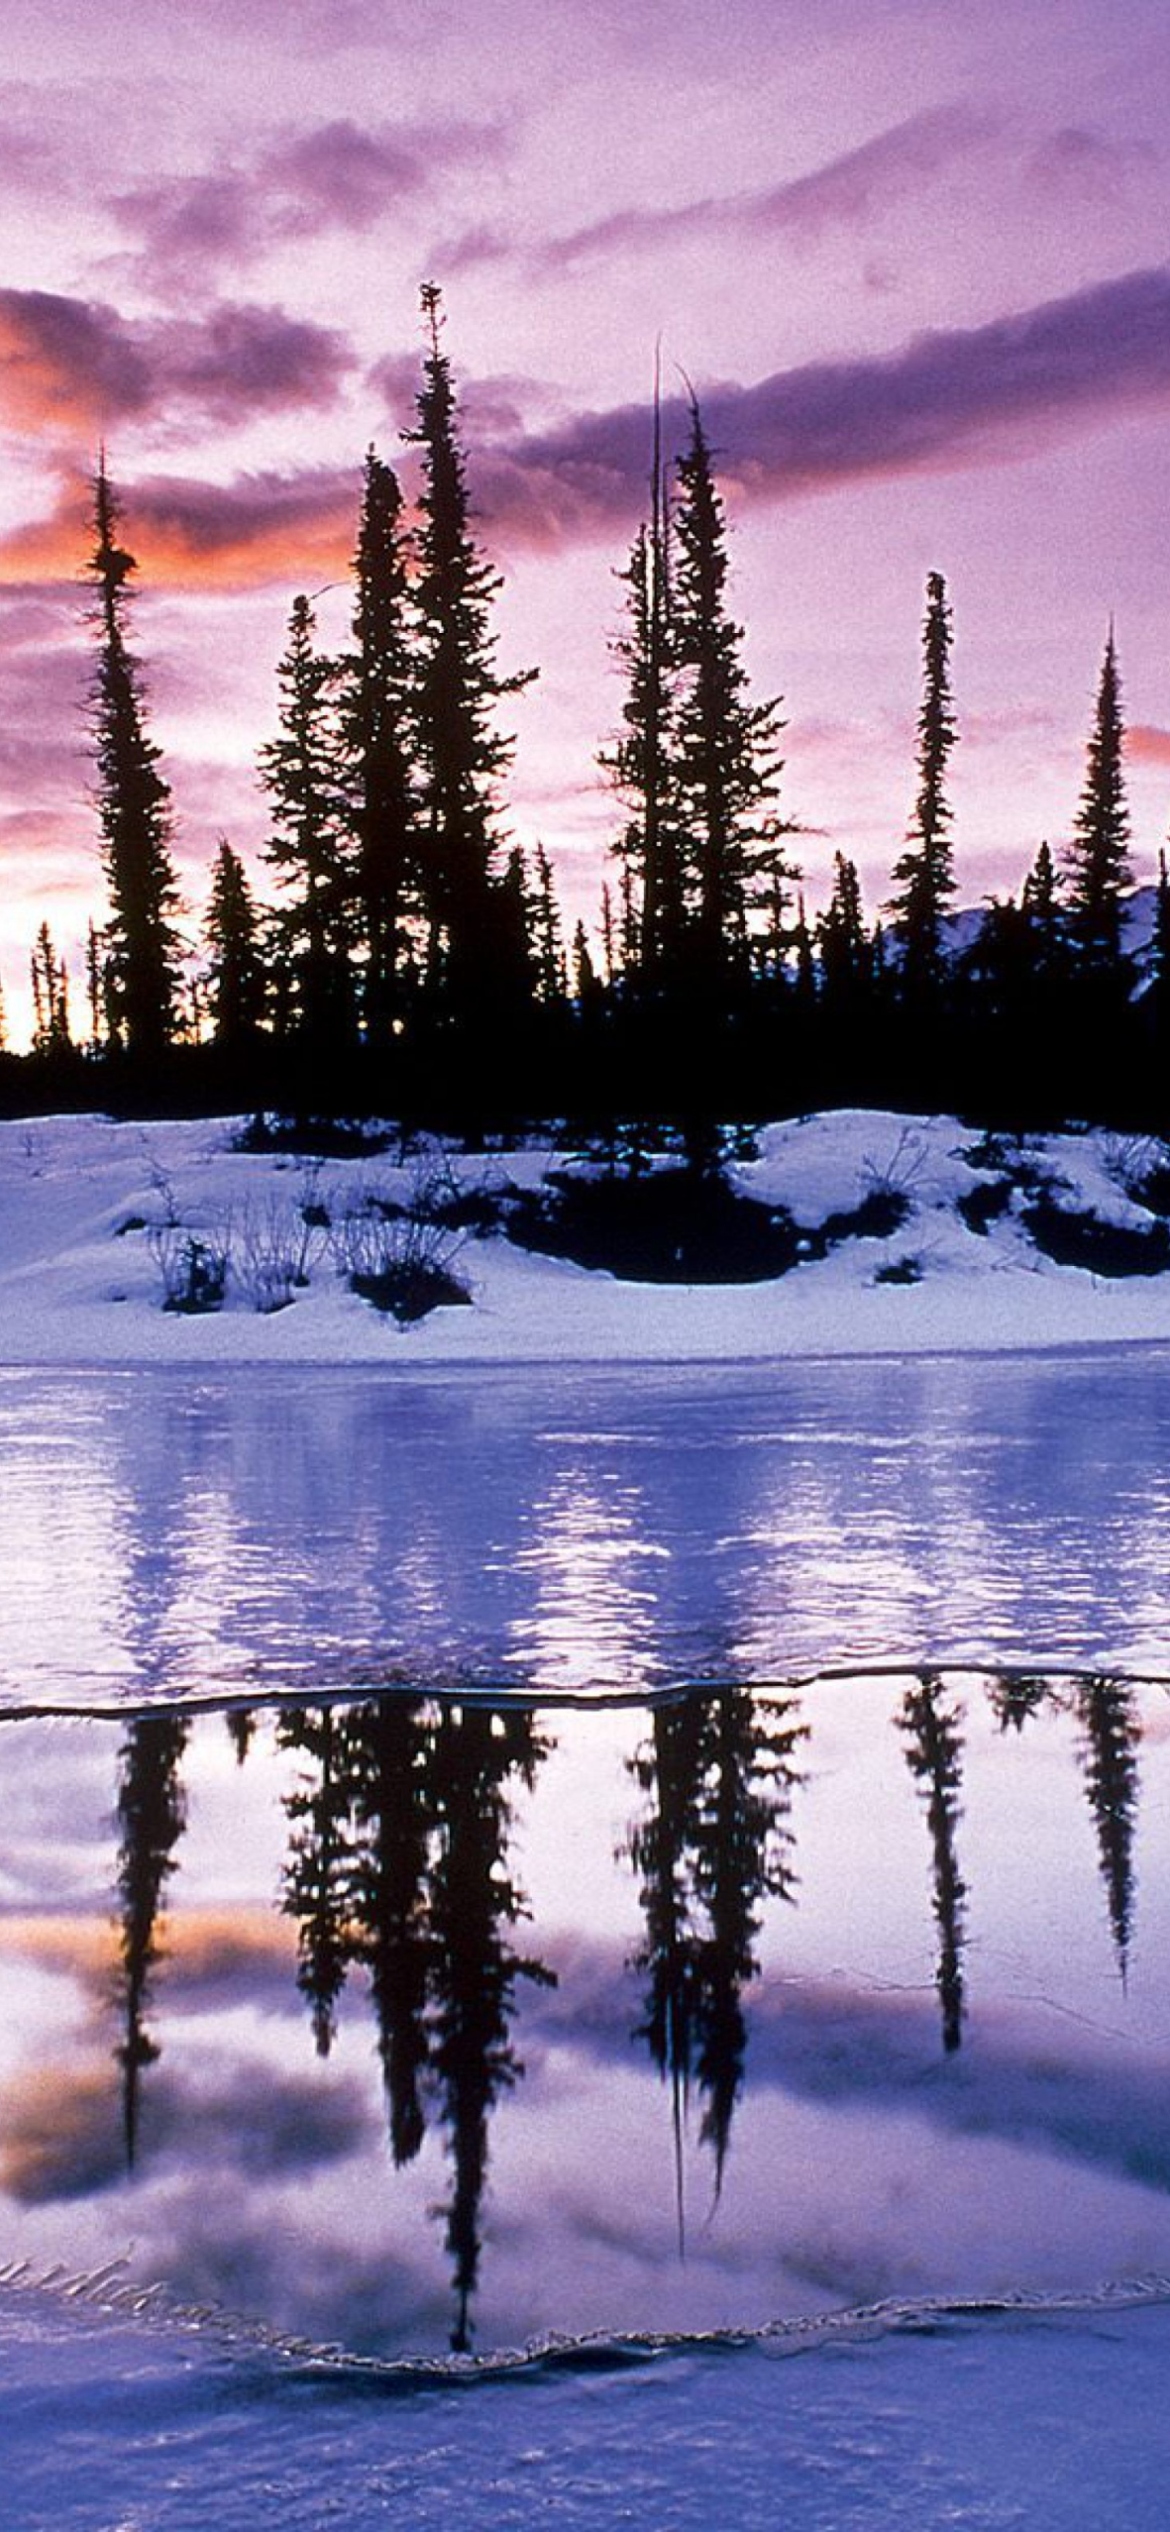 Das Winter Evening Landscape Wallpaper 1170x2532